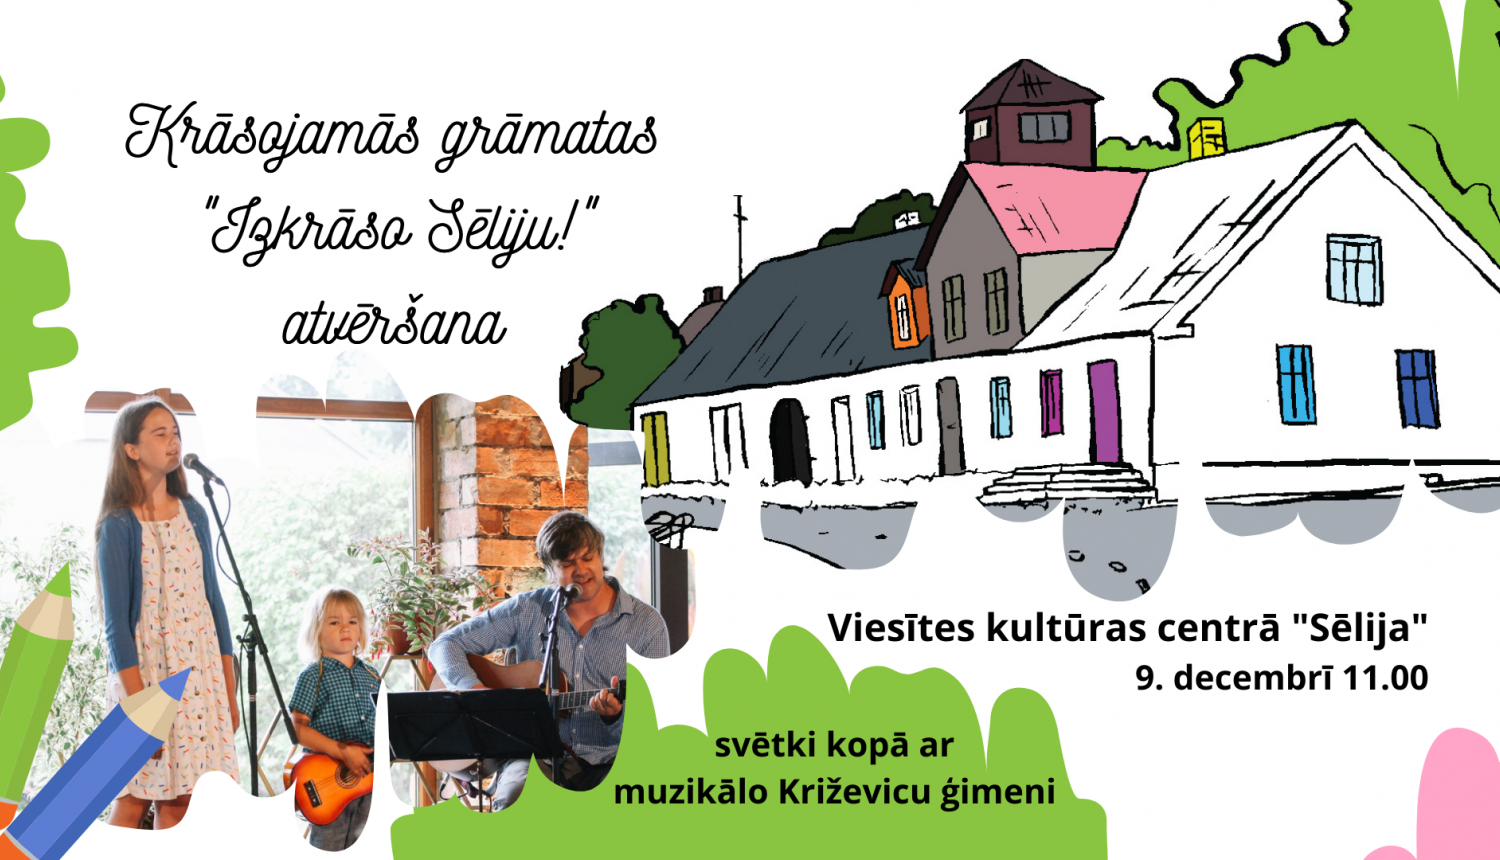 plakāts ar tekstu (laiks, vieta) un fona bildi - āžu miesta kontūrām, pa kreisi Križevicu ģimenes foto